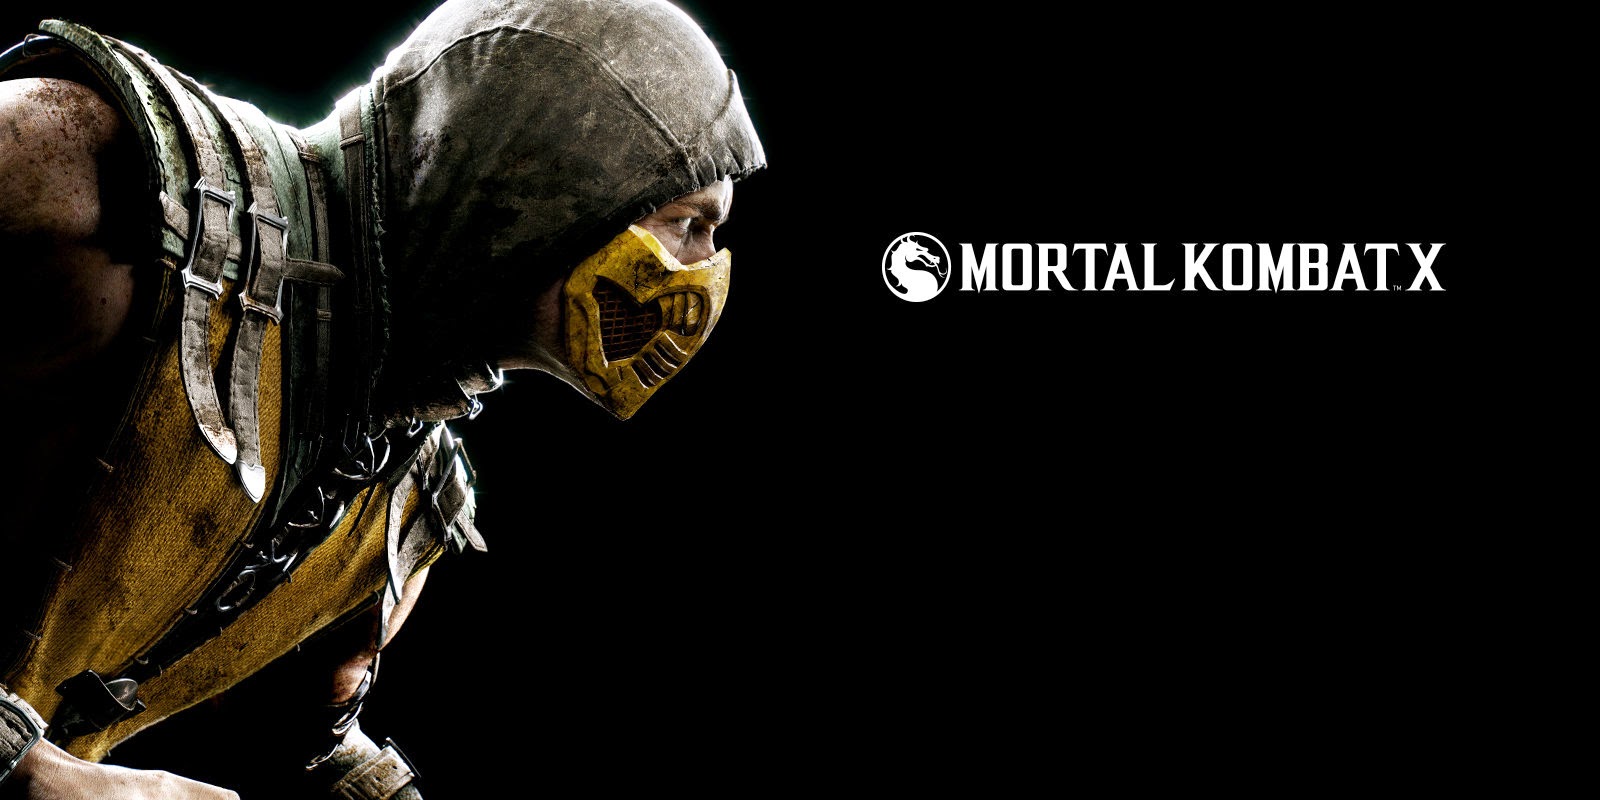 Mortal kombat x updates steam фото 64